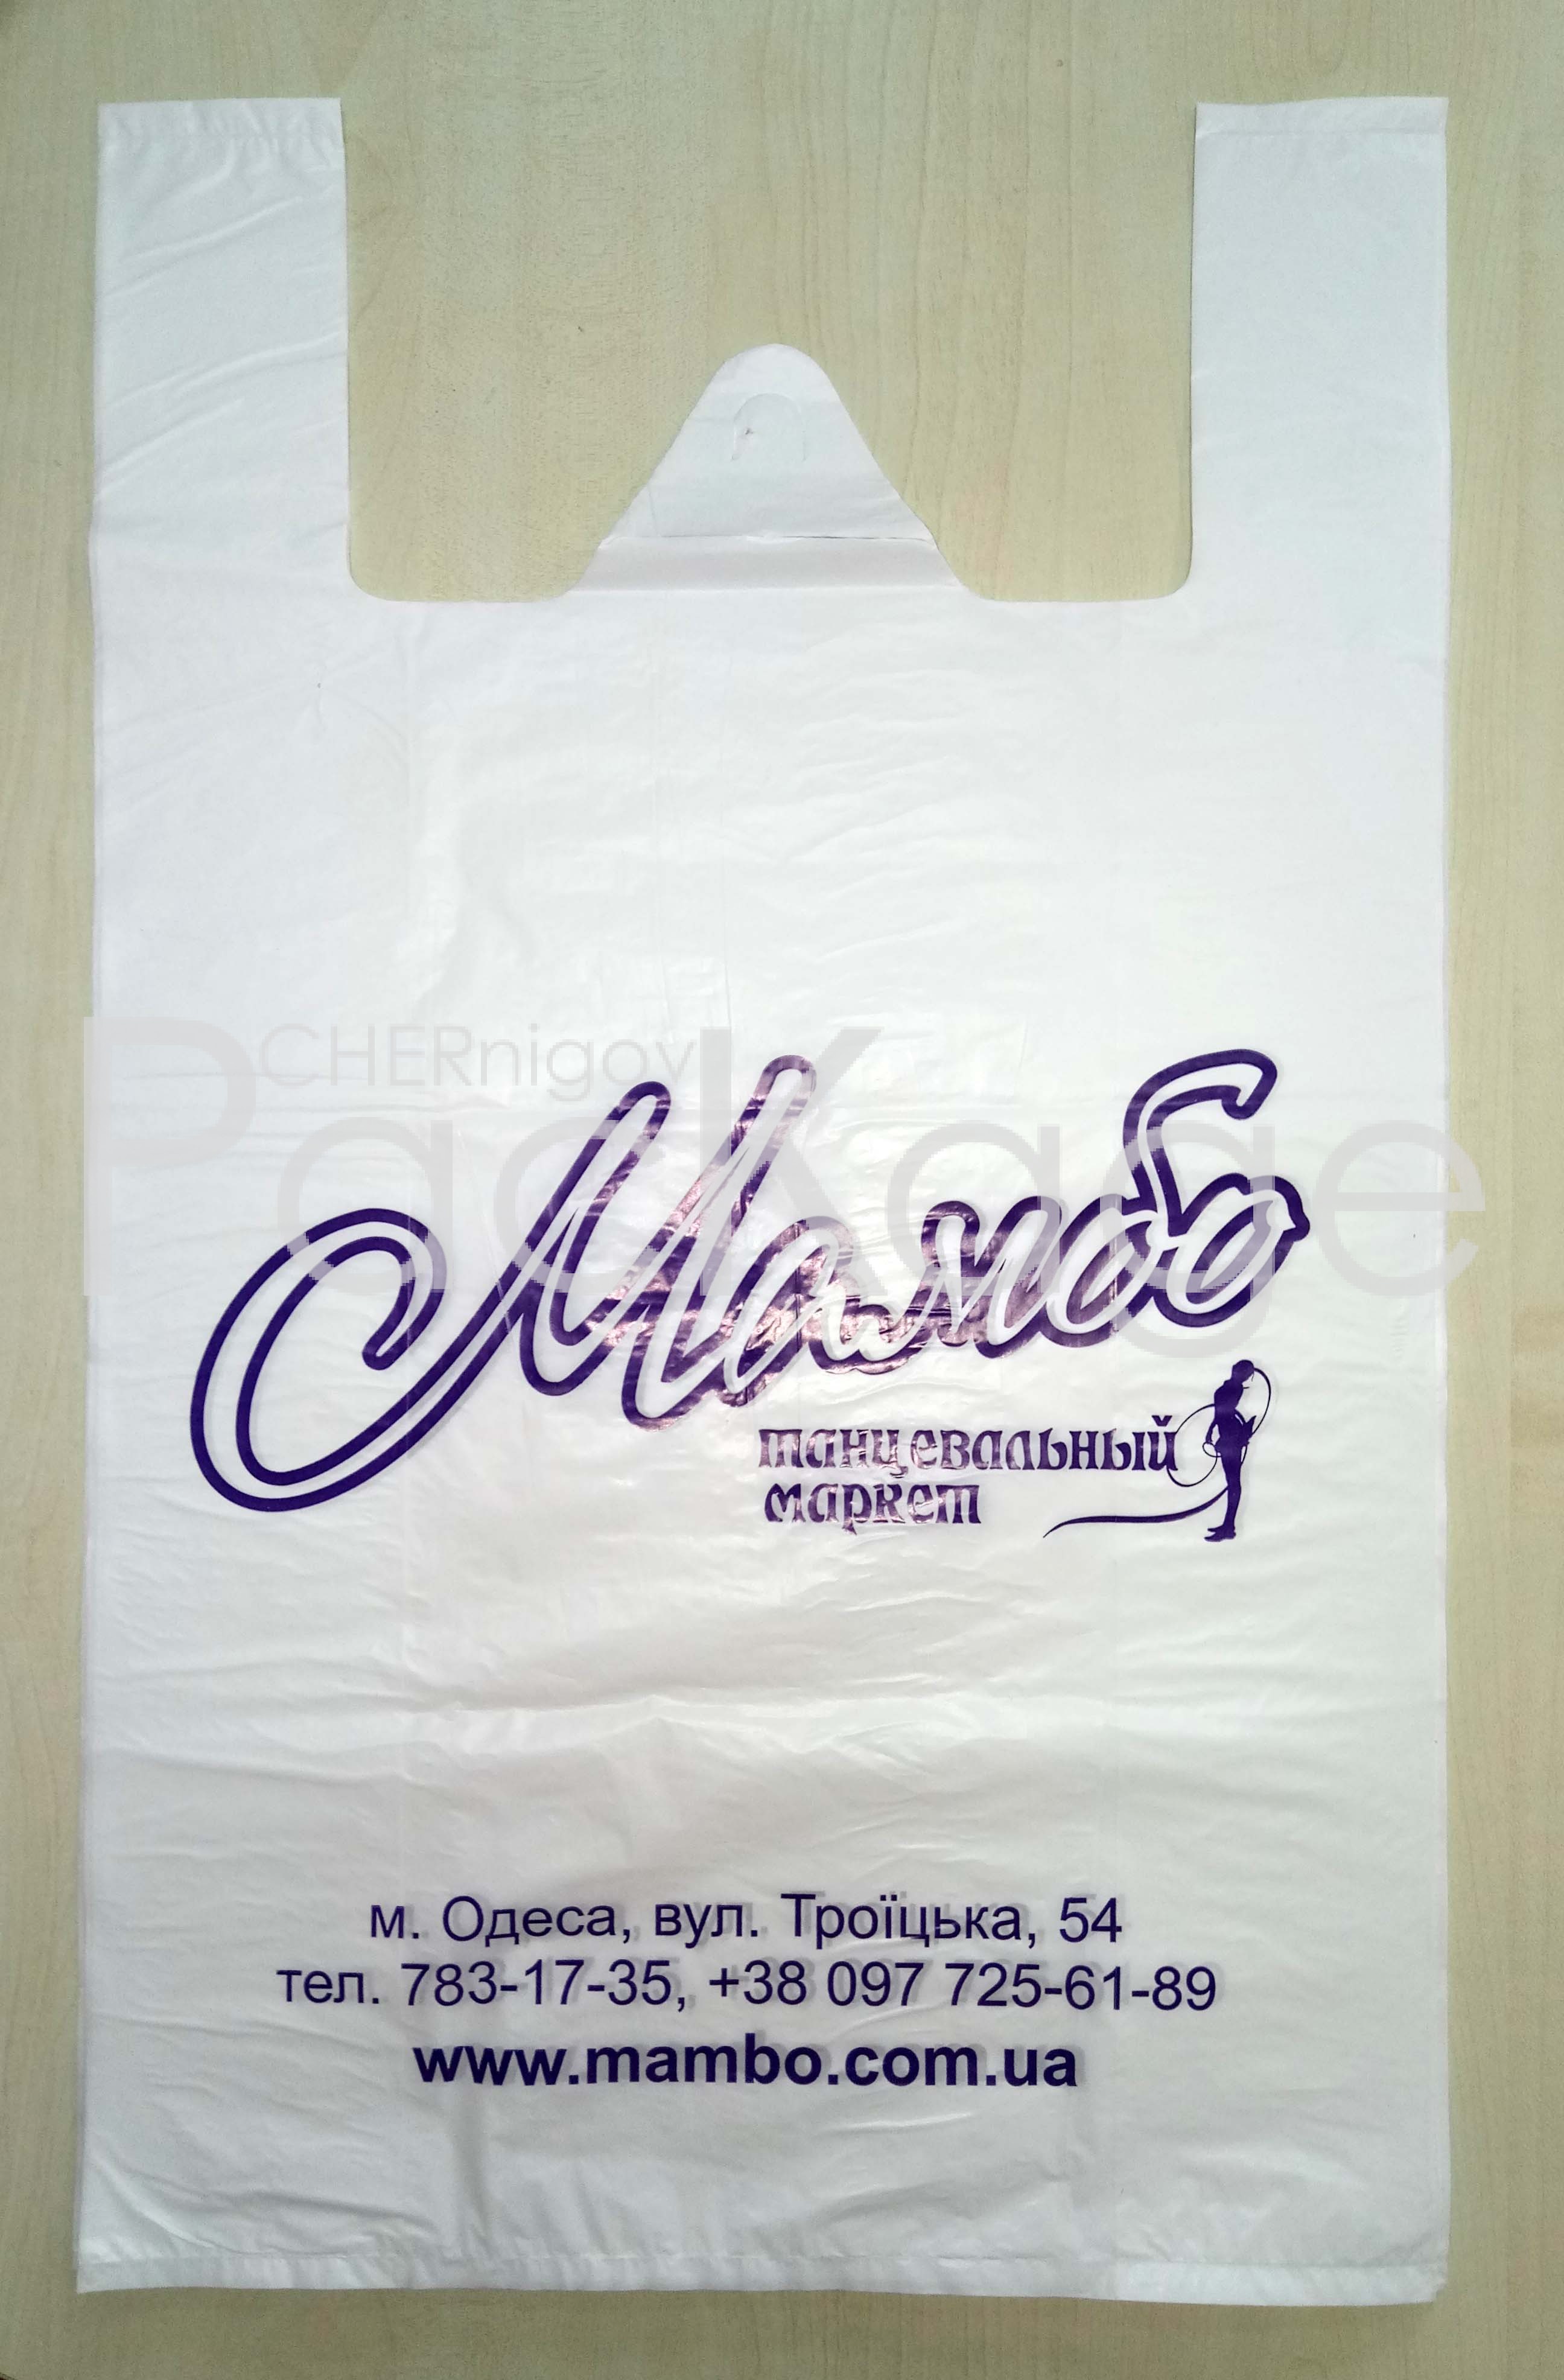 Какие выбрать пакеты майка для магазина Chernigov Package - Фото P70310-103726